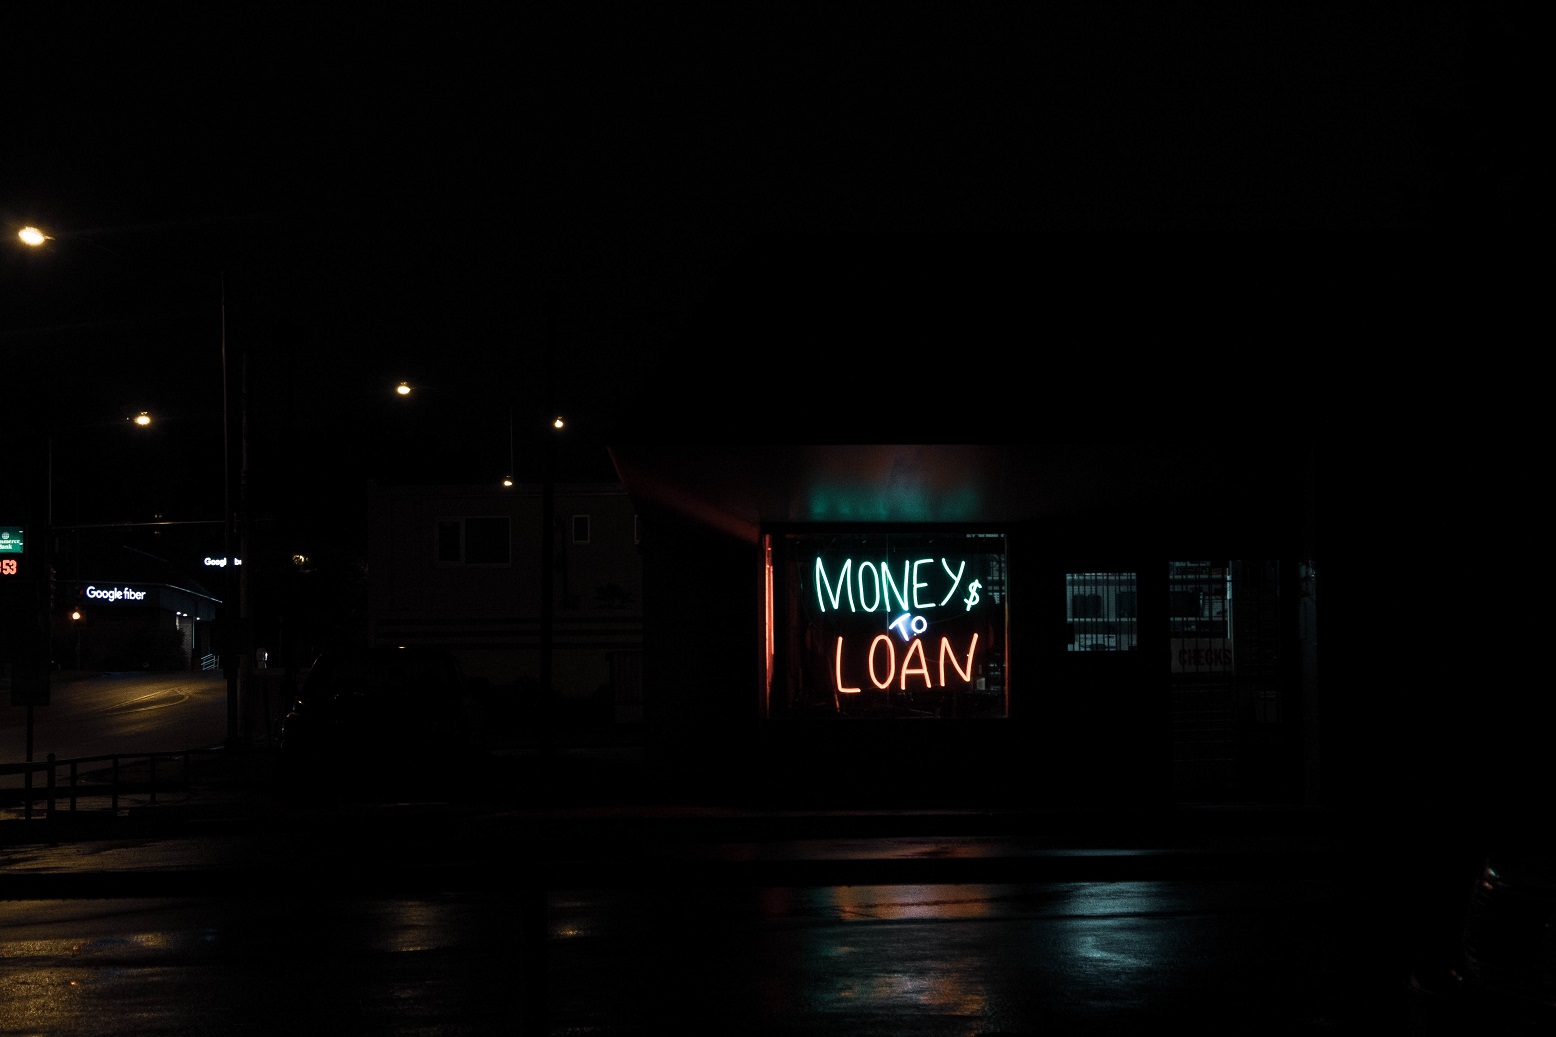 Flash Loans, a loan shark shop